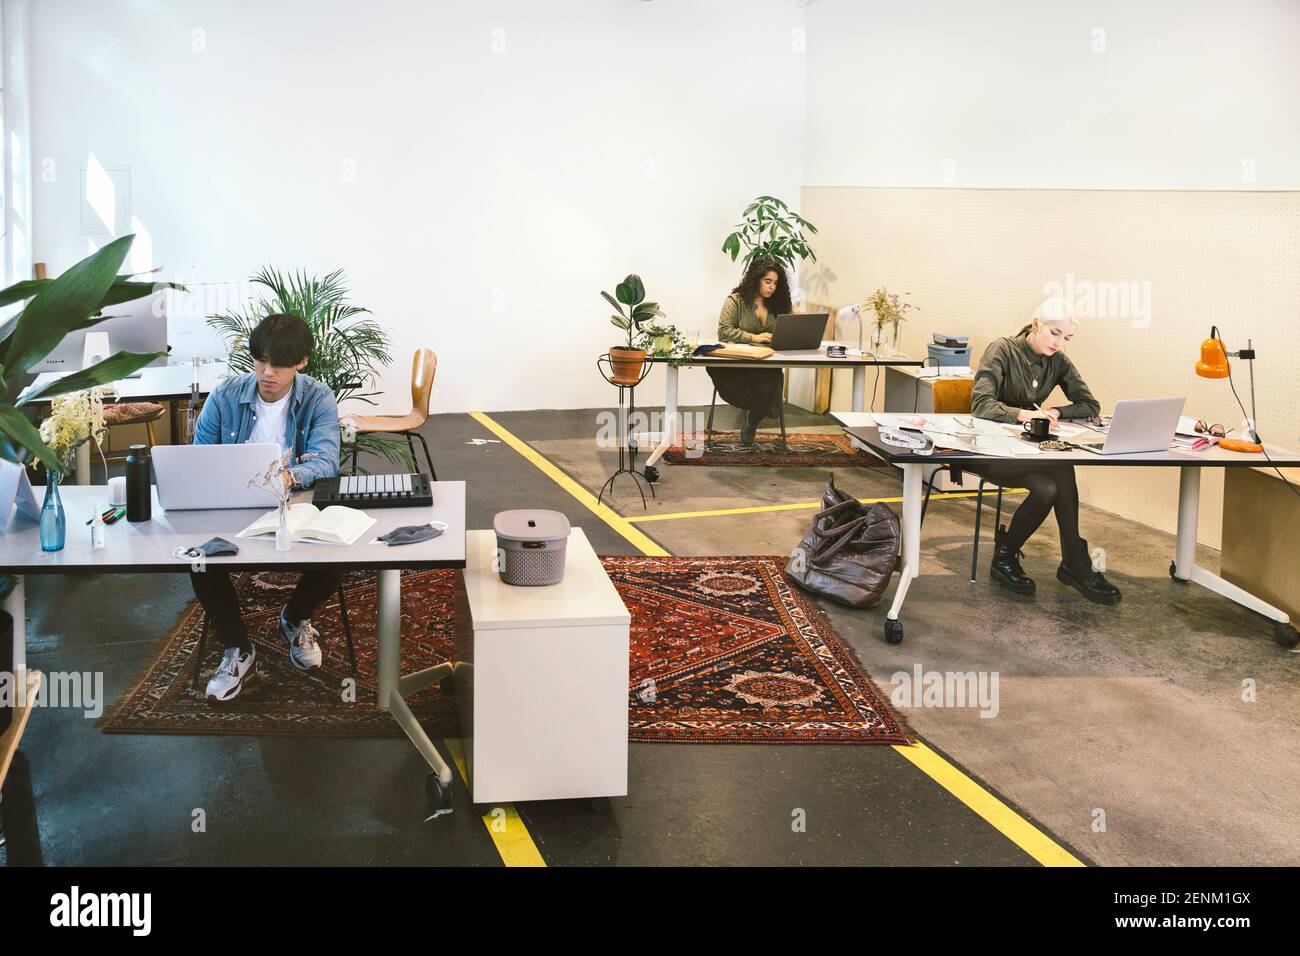 Les personnes travaillant dans un espace de travail en collaboration avec les réseaux sociaux Banque D'Images